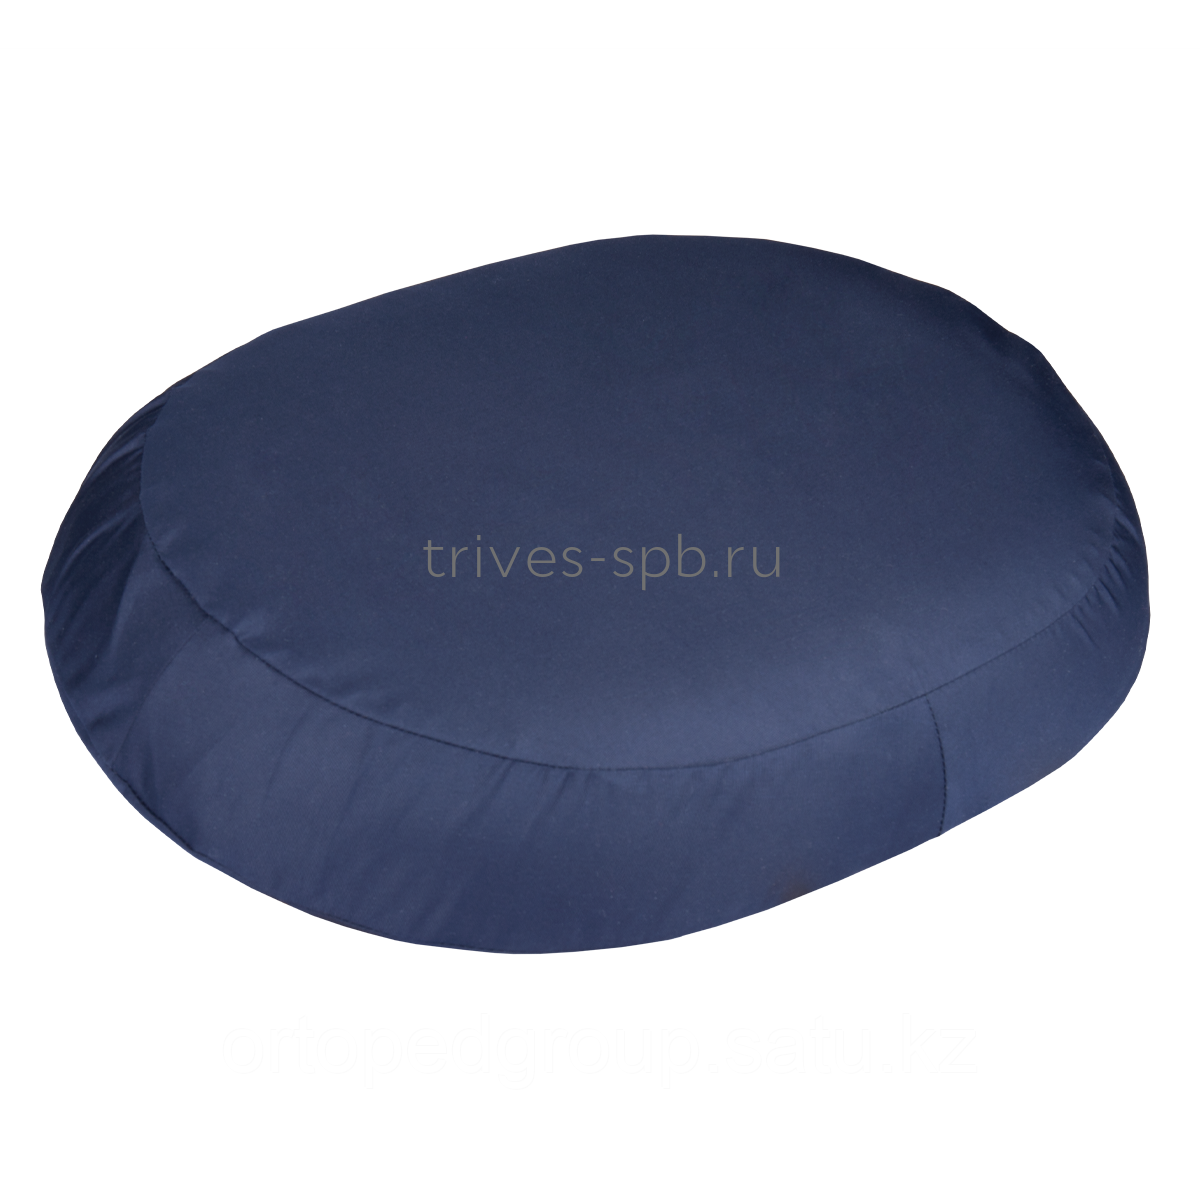 Ортопедическая подушка ТРИВЕС ТОП-429